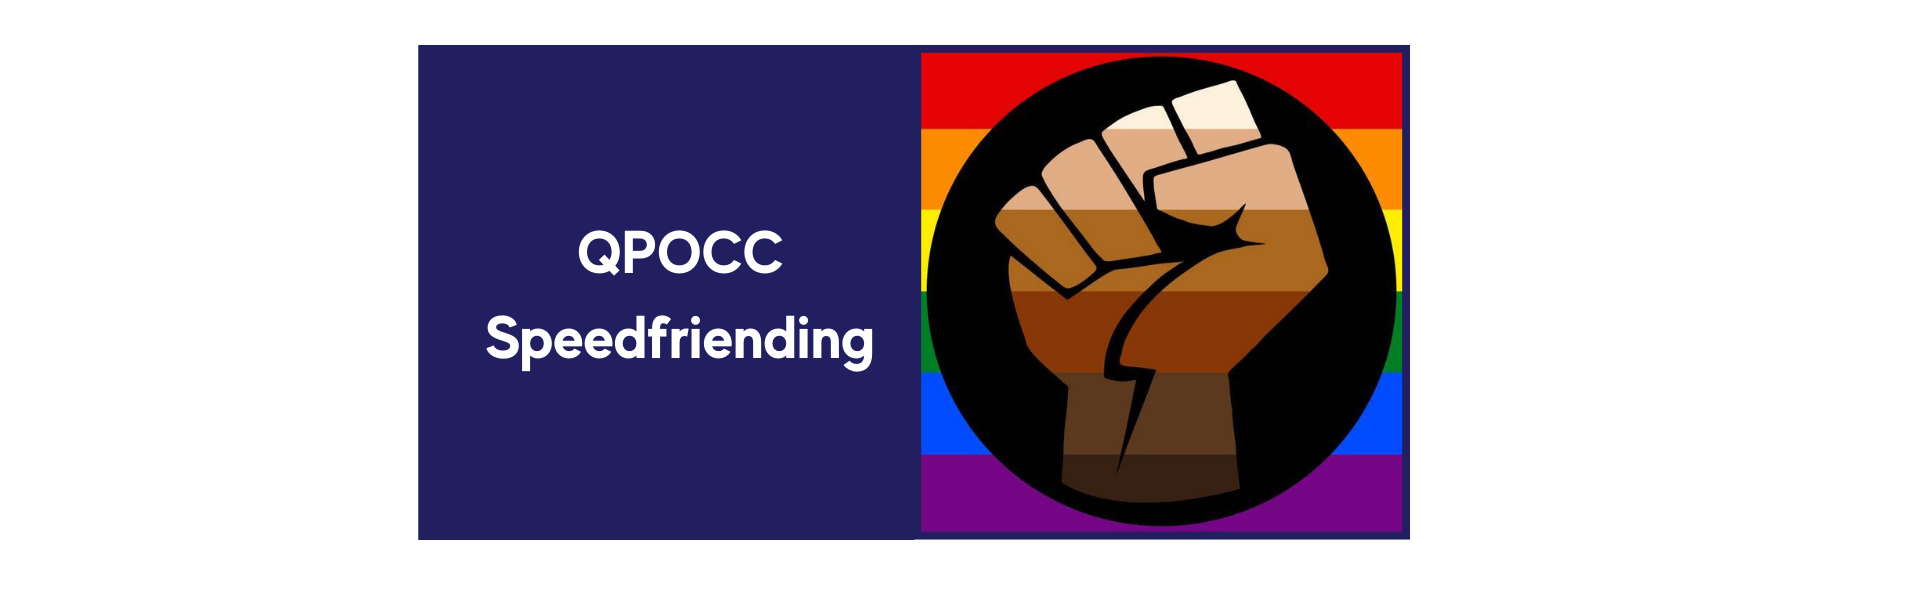 QPOCC-Speedfriending.png